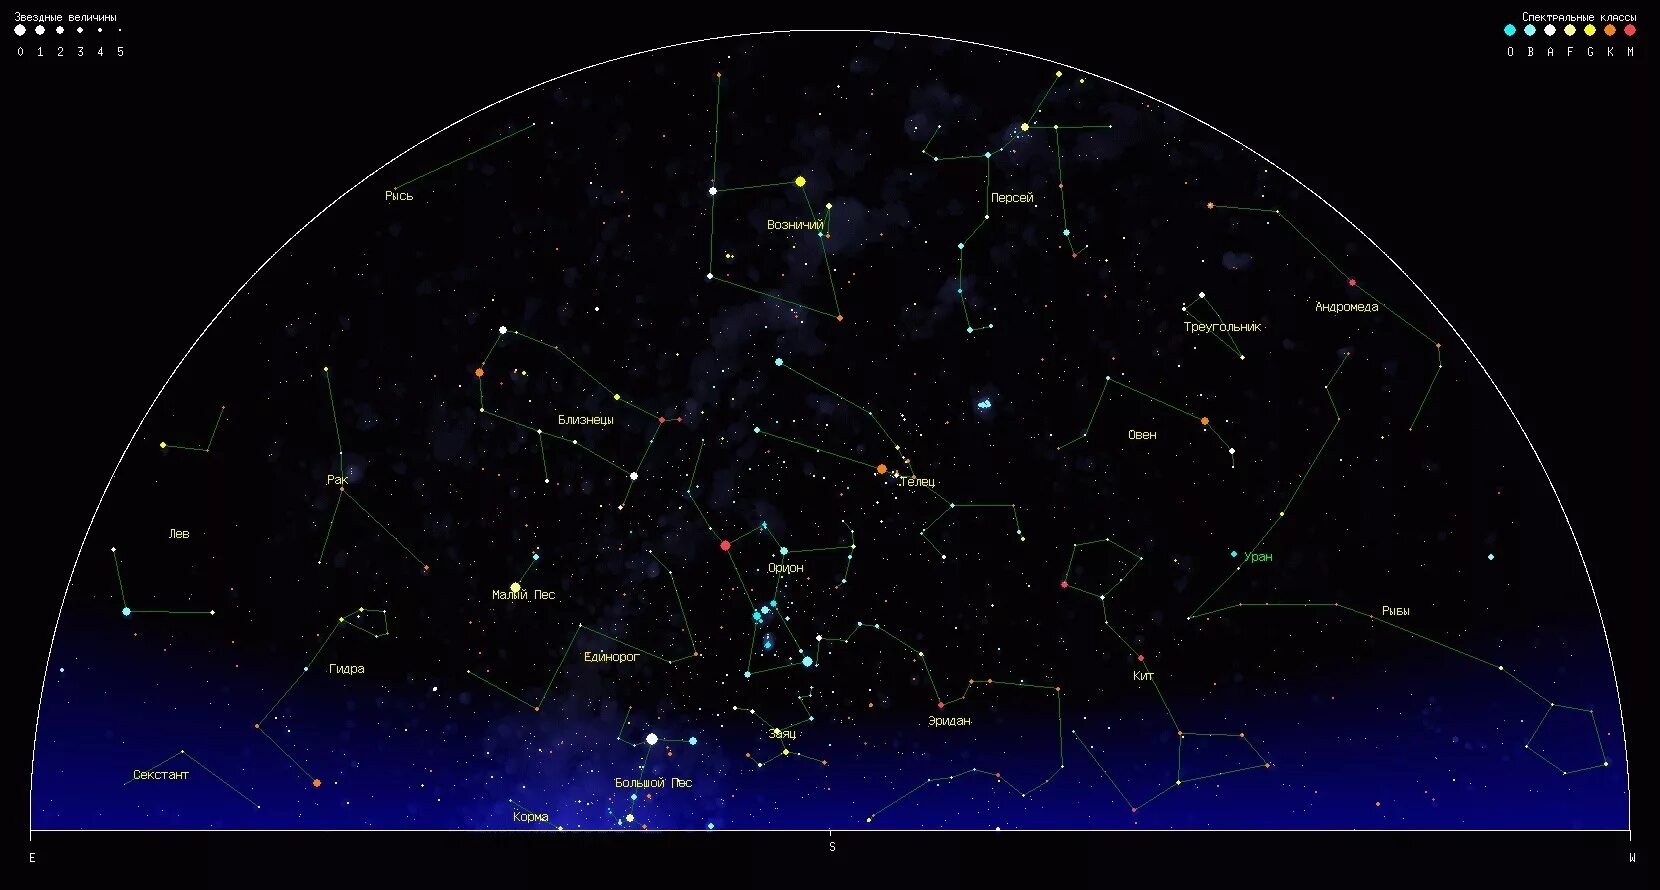 Созвездия много название. Созвездия летнего неба Северного полушария. Карта звёздного неба Северное полушарие большая Медведица. Орион на карте звездного неба Северное полушарие. Видимые созвездия Северного полушария.